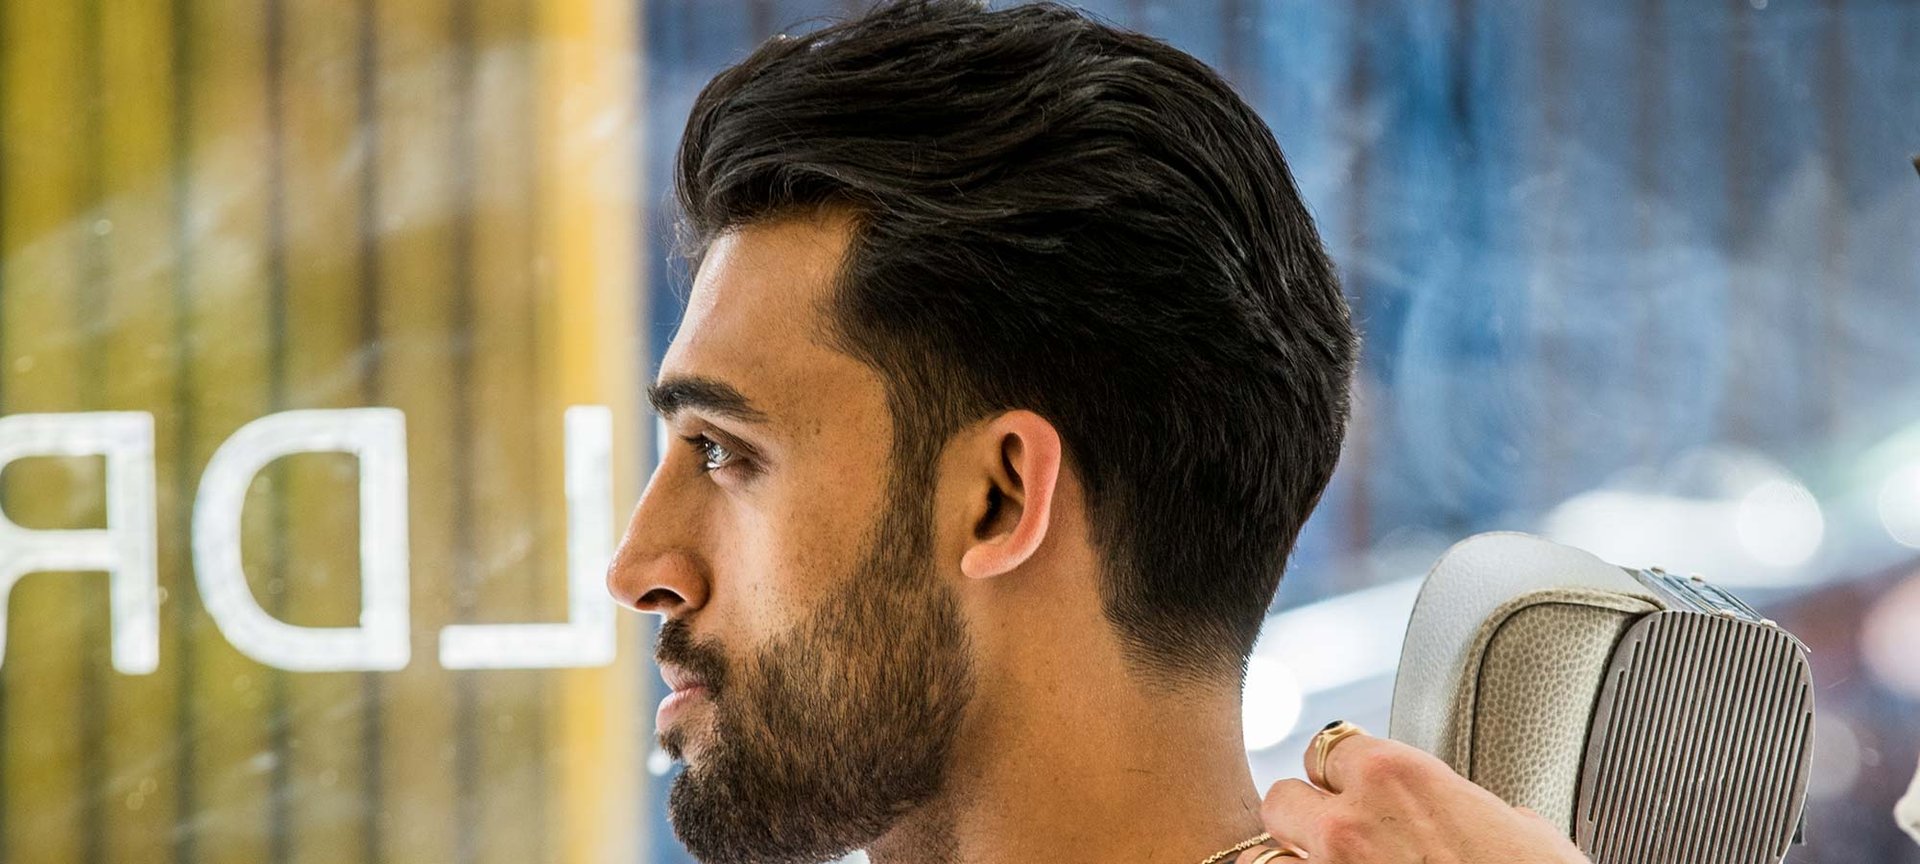 Los 10 Tipos de Peinados mas comunes para Hombres con el Pelo Rizado